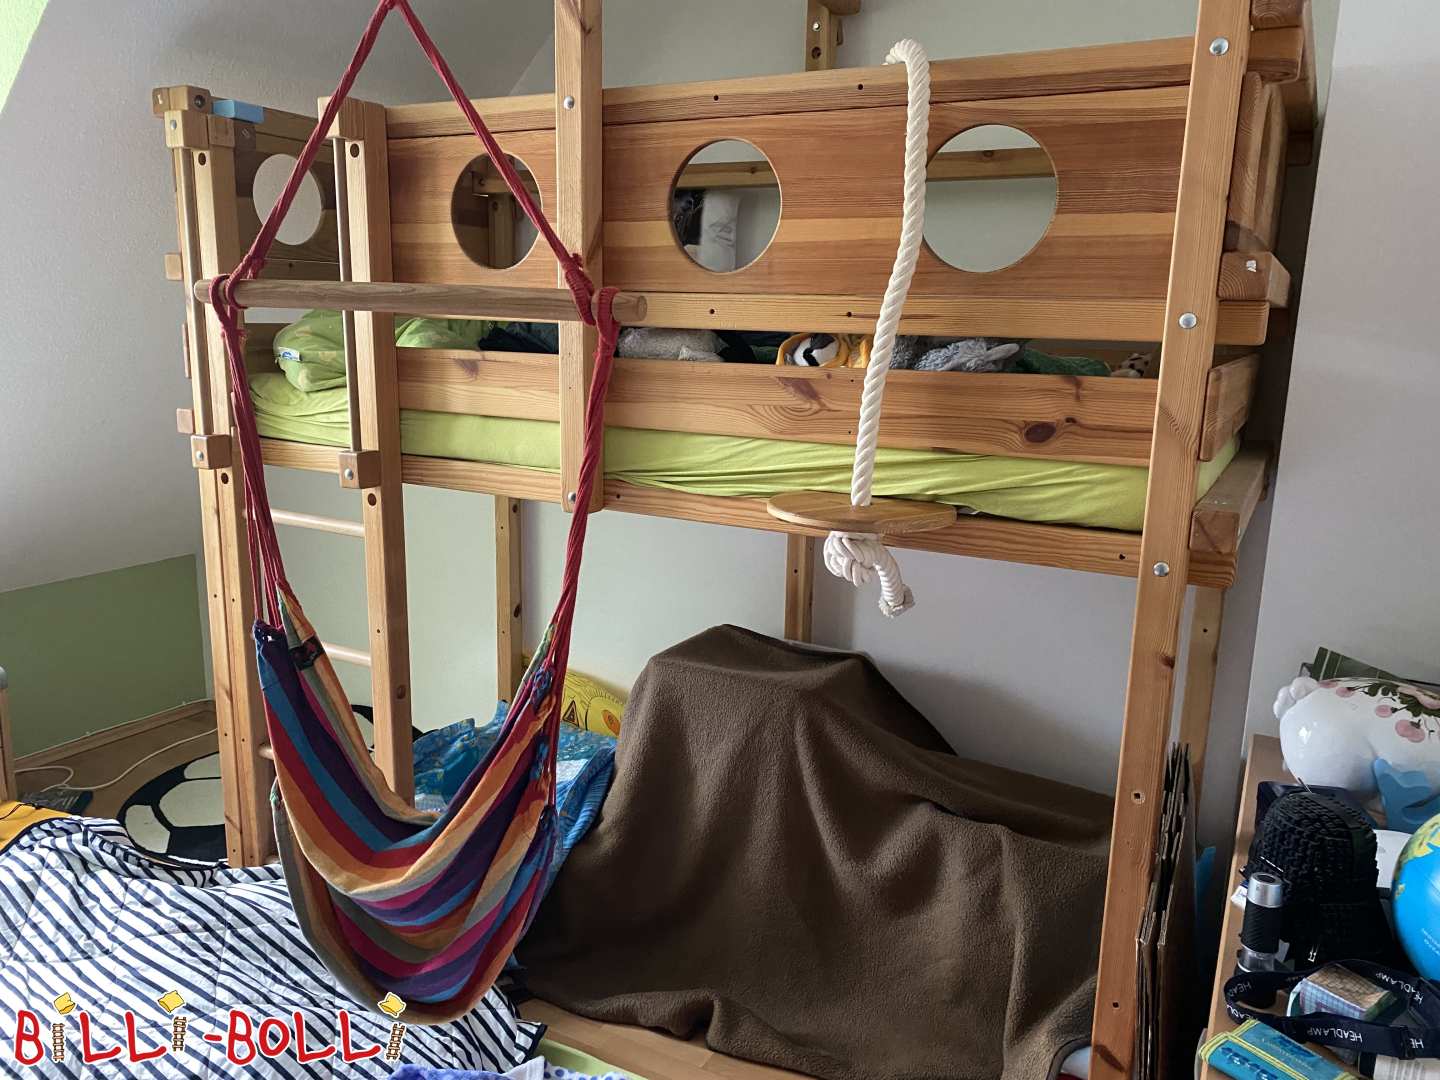 Krevet u potkrovlju koji raste s djetetom, bor, nauljeni vosak, puno pribora (Kategorija: Krevet u potkrovlju raste s djetetom used)